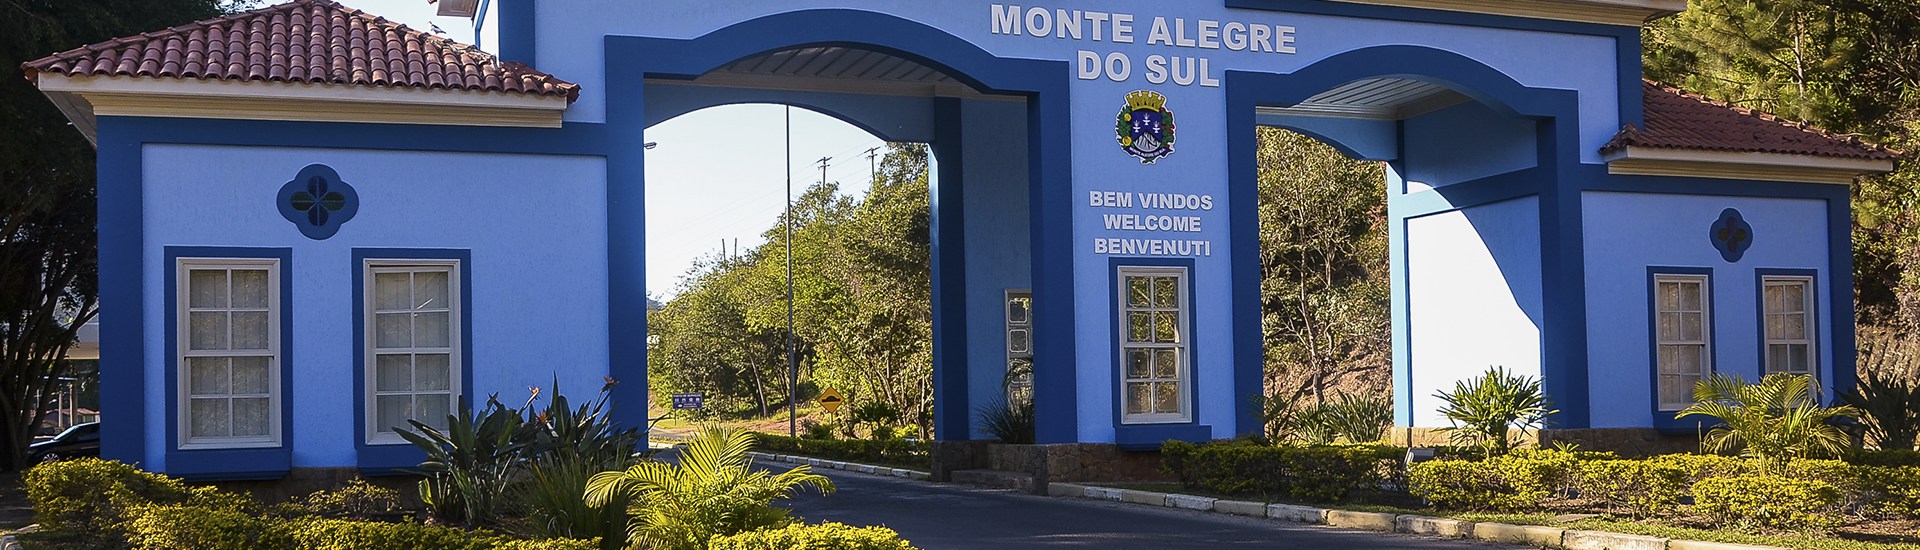 Monte Alegre do Sul